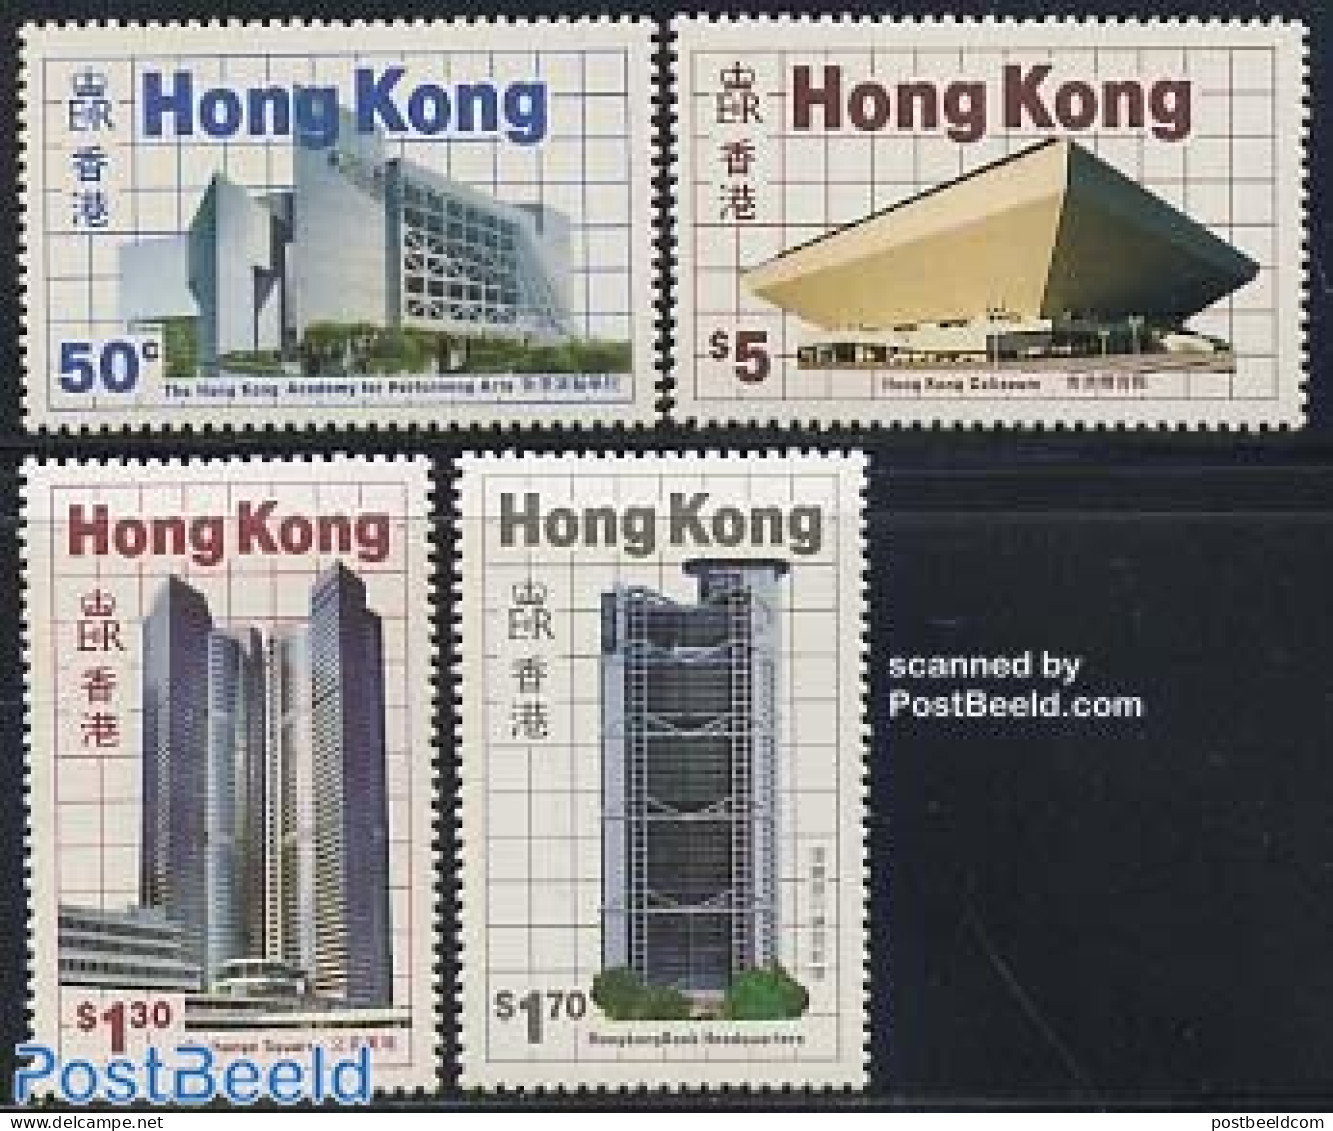 Hong Kong 1985 Modern Buildings 4v, Mint NH, Various - Banking And Insurance - Art - Modern Architecture - Ongebruikt